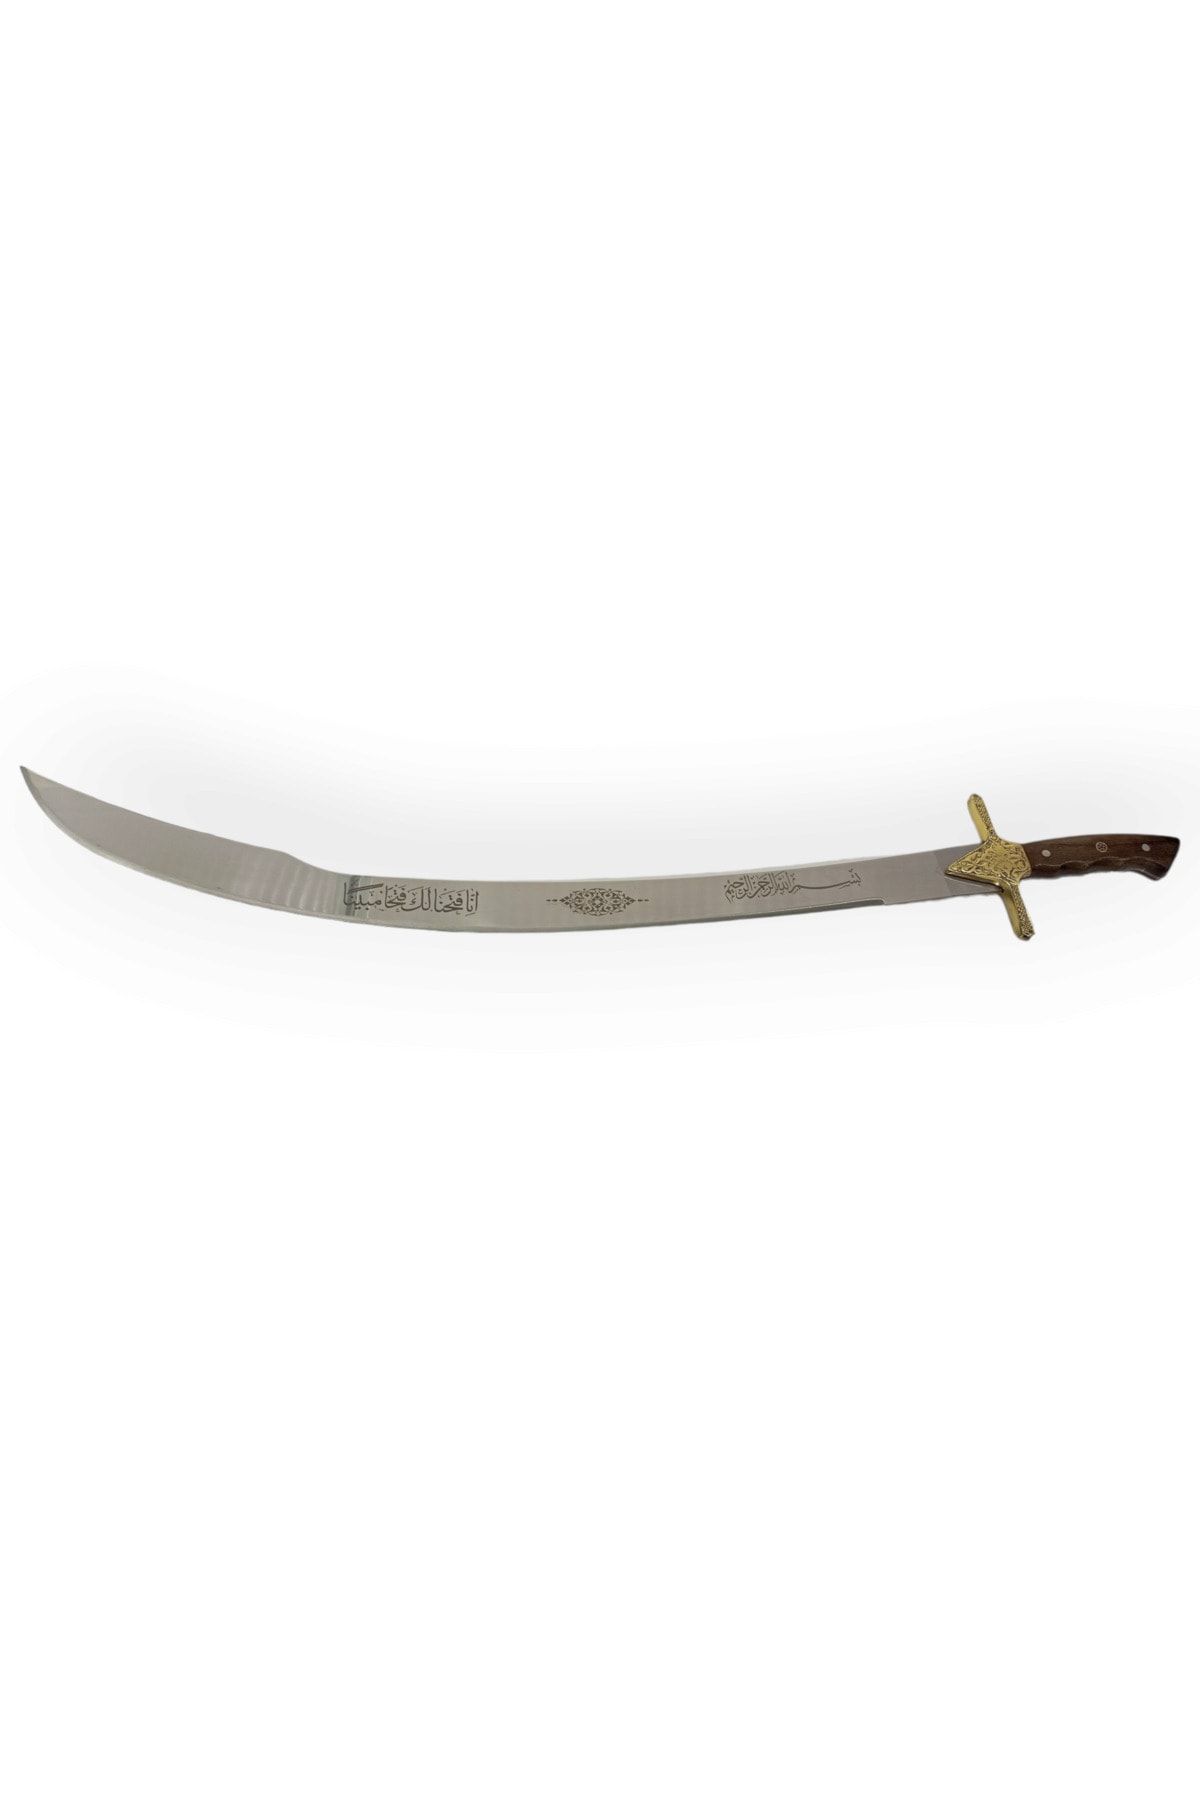 sivas bıçak Yatağan Kılıcı Fetih 1453